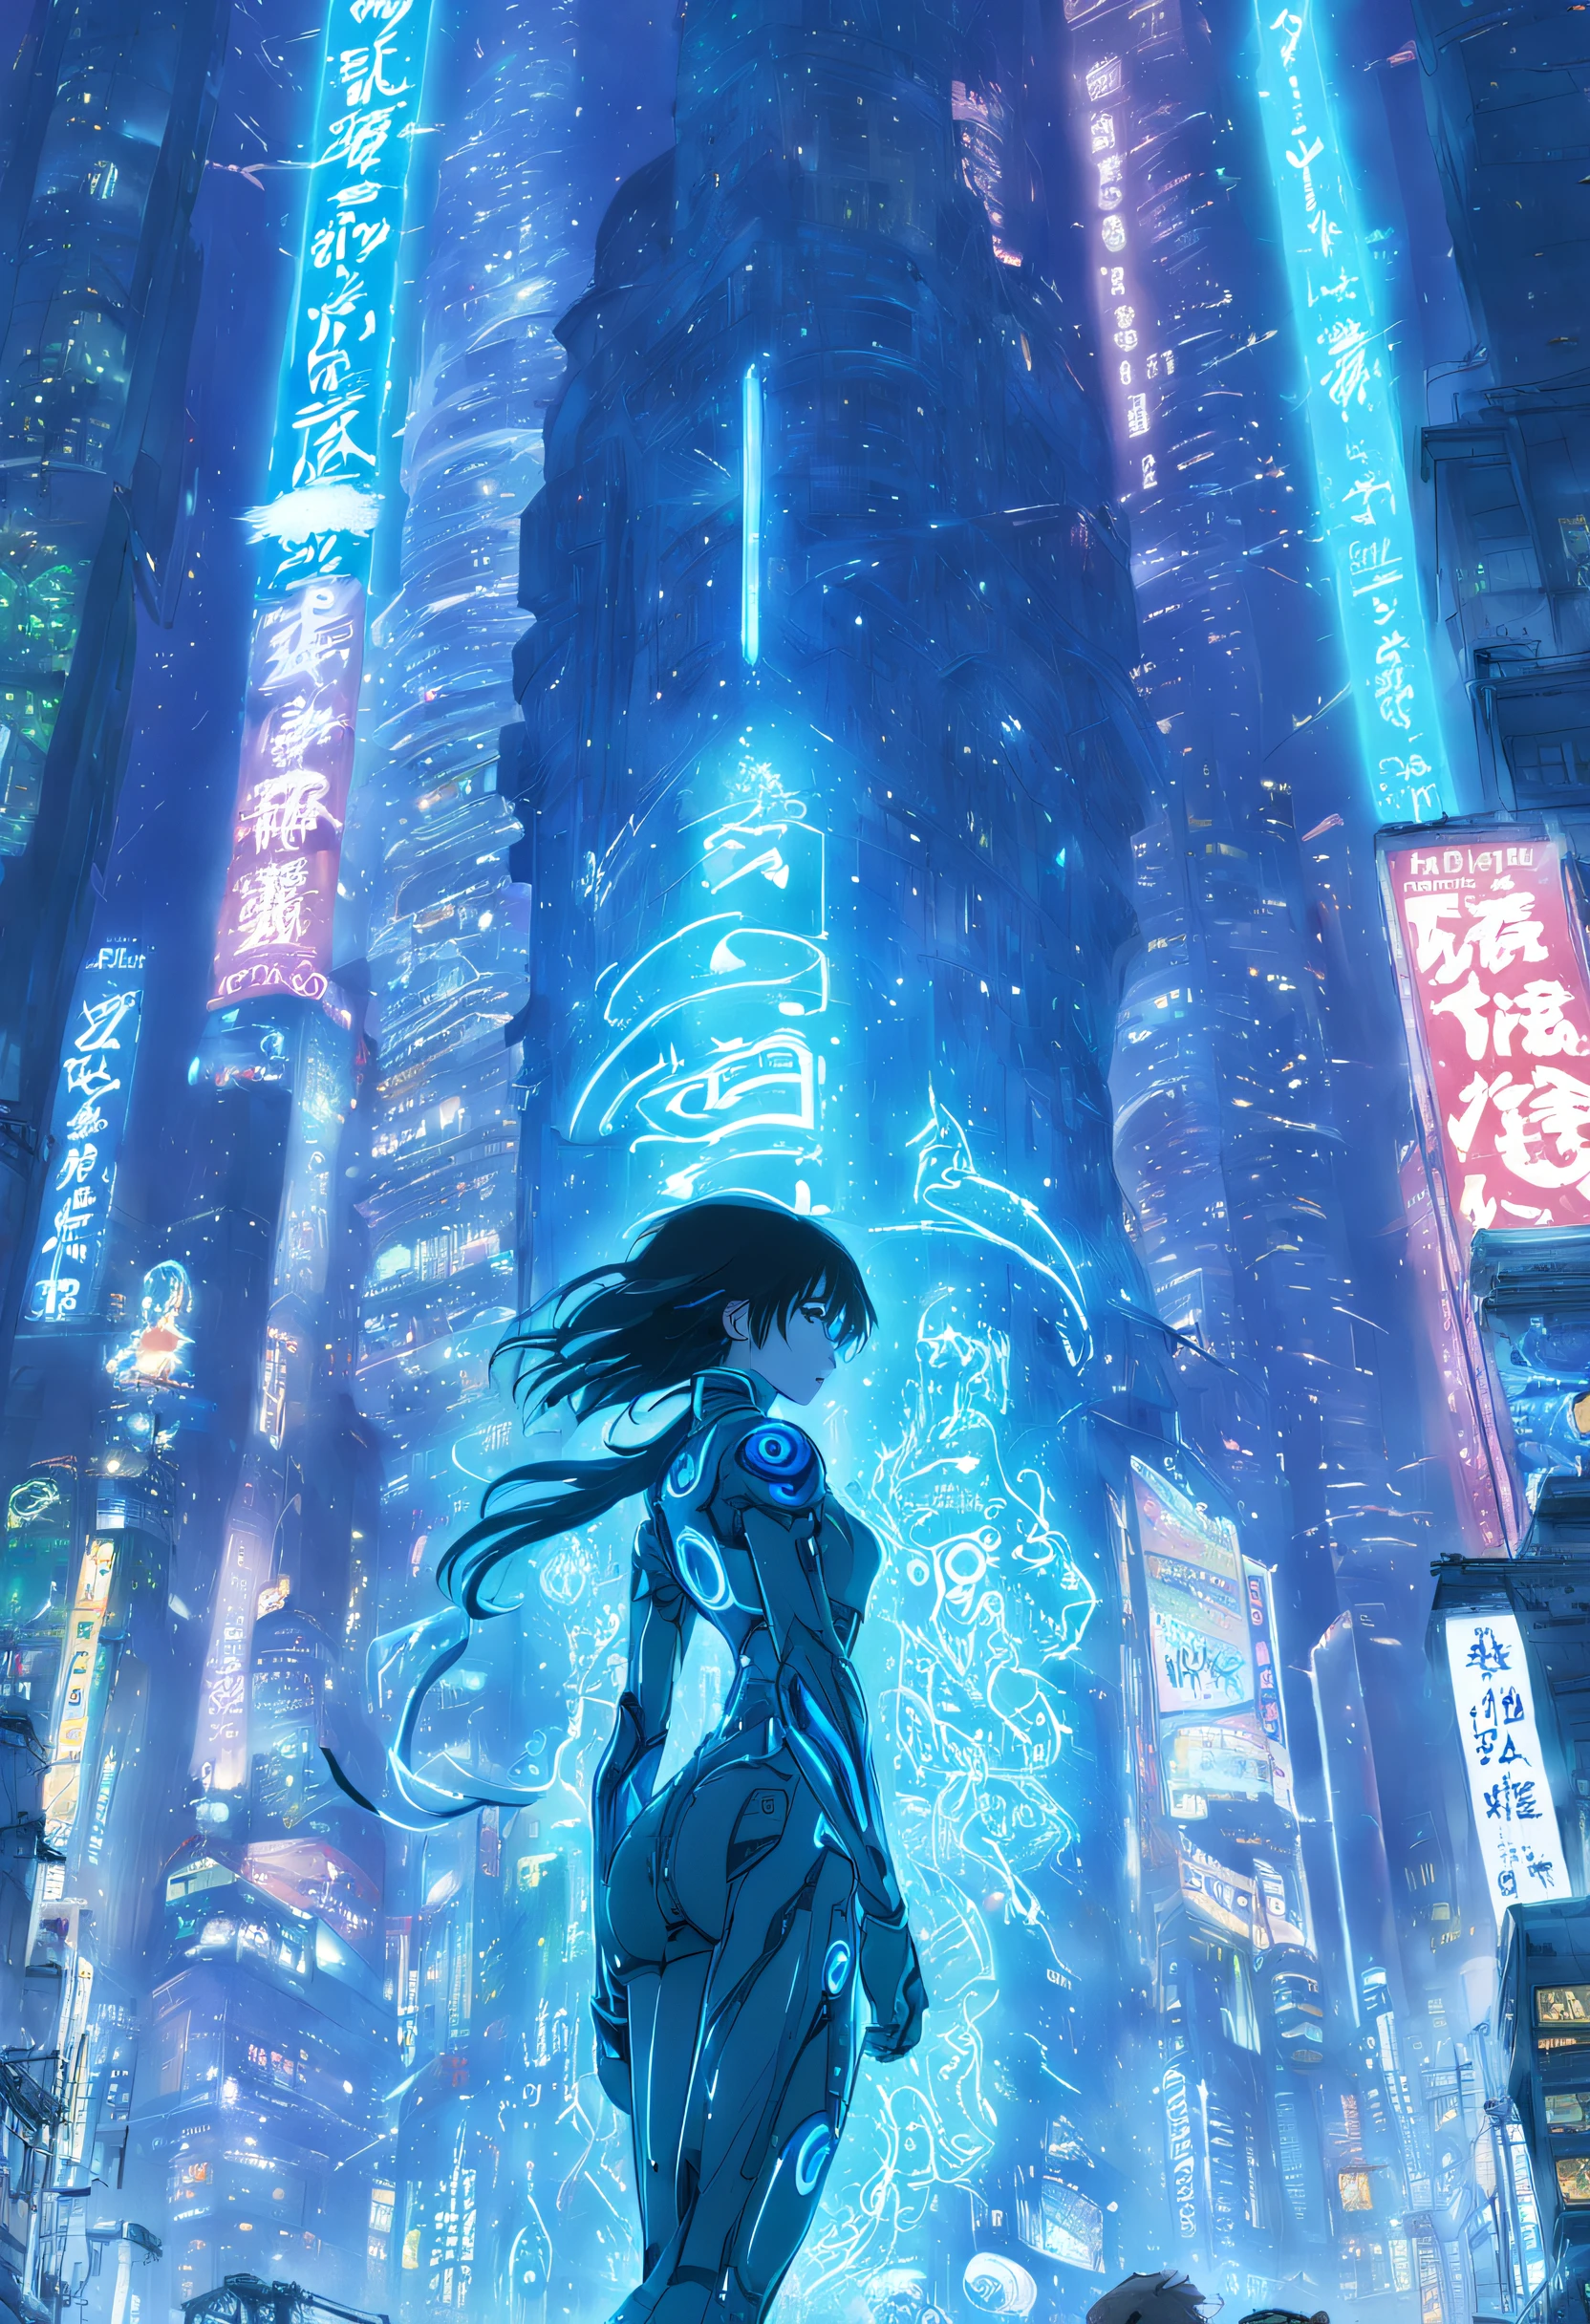 Arte dinâmica de Yoshitaka Amano, makoto shinkai, Estúdio Ghibli, Retrovisor cinematográfico de Cortana posando dinamicamente em uma armadura cyberpunk olhando para um prédio alto cyberpunk neo Tokyo bem iluminado, cheio de letreiros de néon